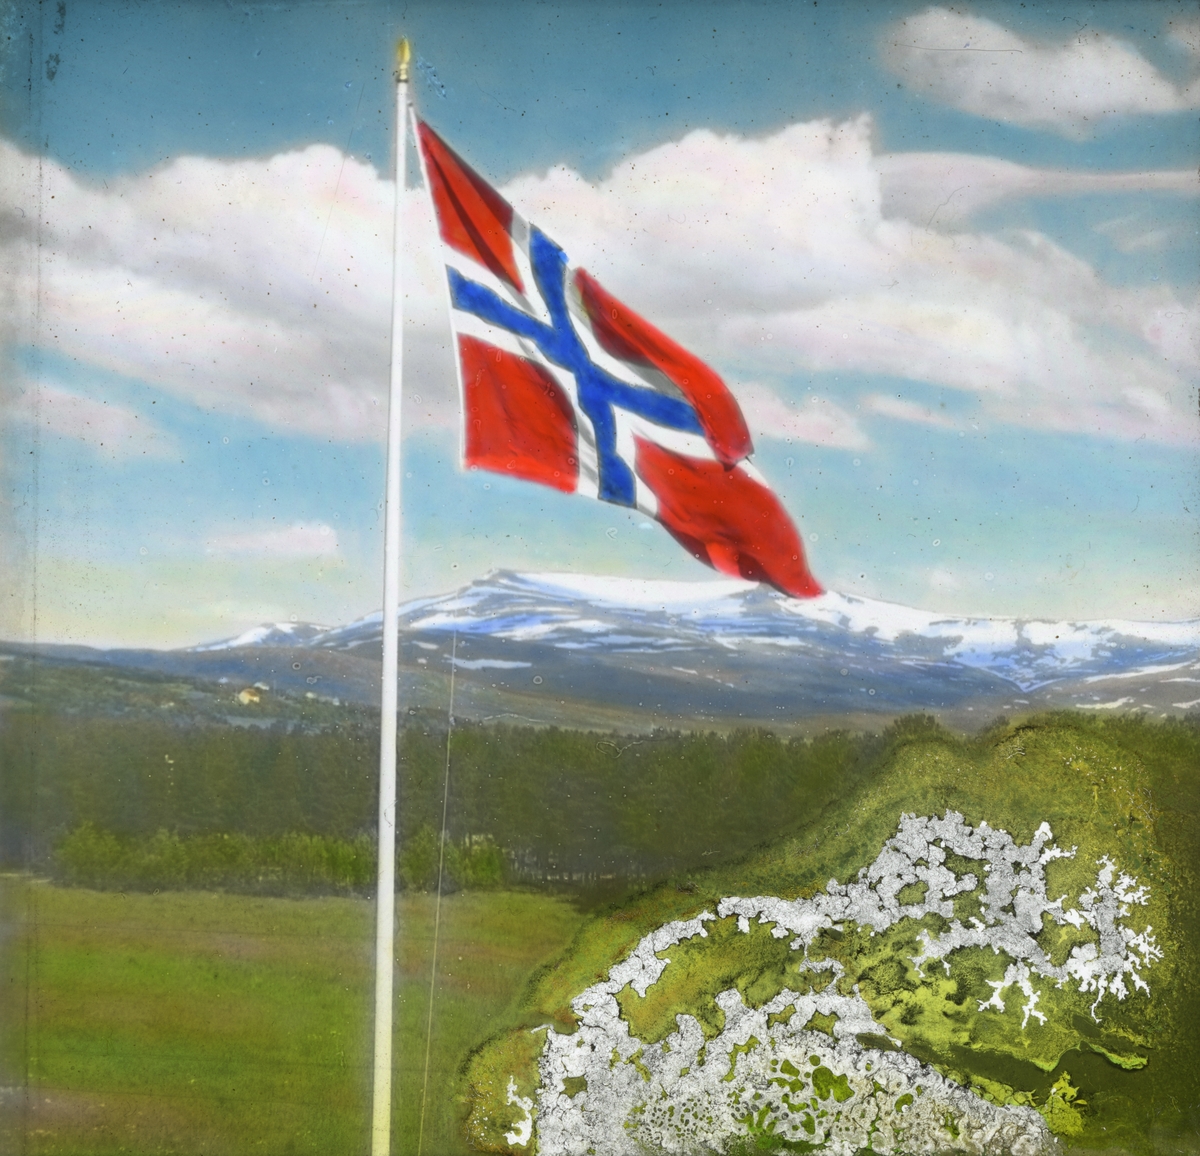 Håndkolorert dias. Et norsk flagg vaier i vinden. I bakgrunnen sees grønne åser og snødekte fjell.